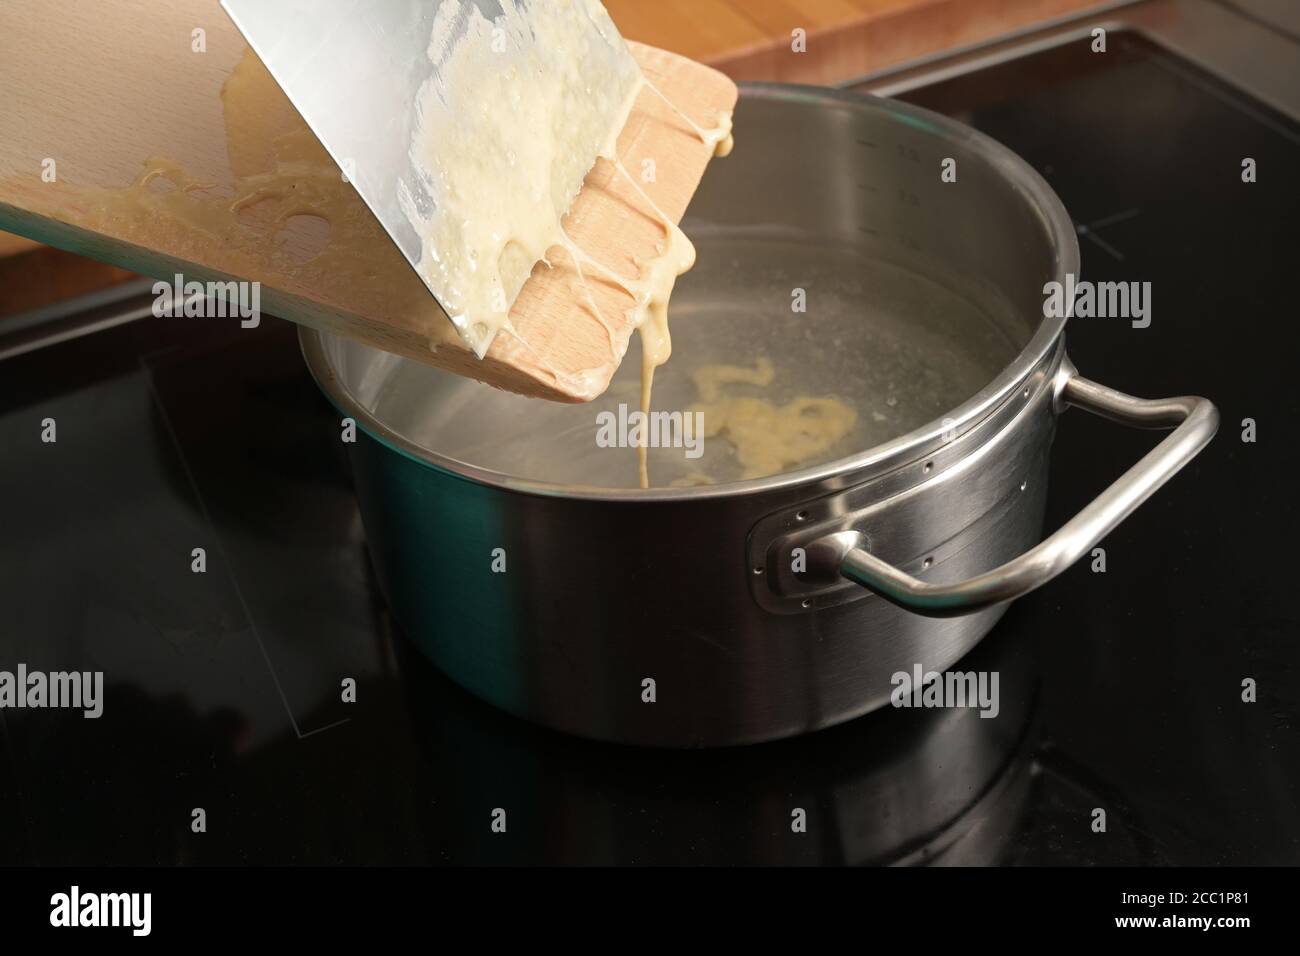 Kochen spätzle, hausgemachter Eiernudelteig wird von einem Holzbrett in kochendes Wasser geschabt, typisches Gericht in Schwaben, Süddeutschland und Österreich, Stockfoto